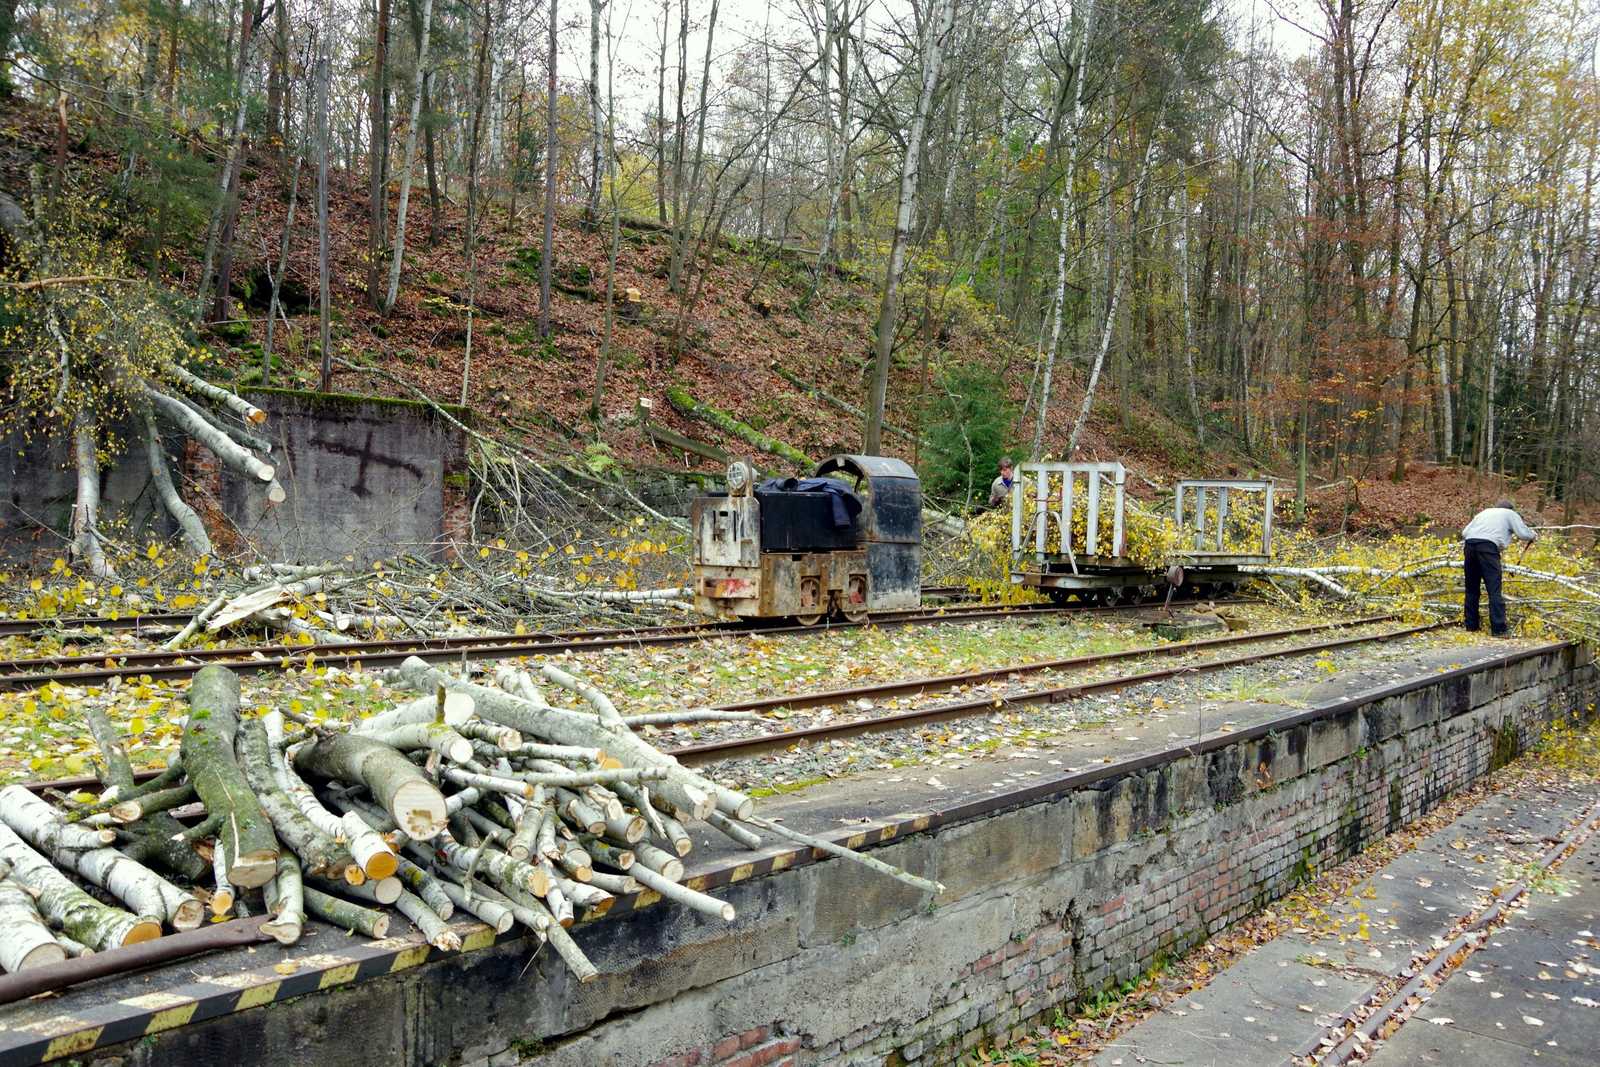 Holzfällen und -bergen mit Unterstützung der Feldbahn-Akkulok vom Typ Metallist beim Abtransport der Äste.